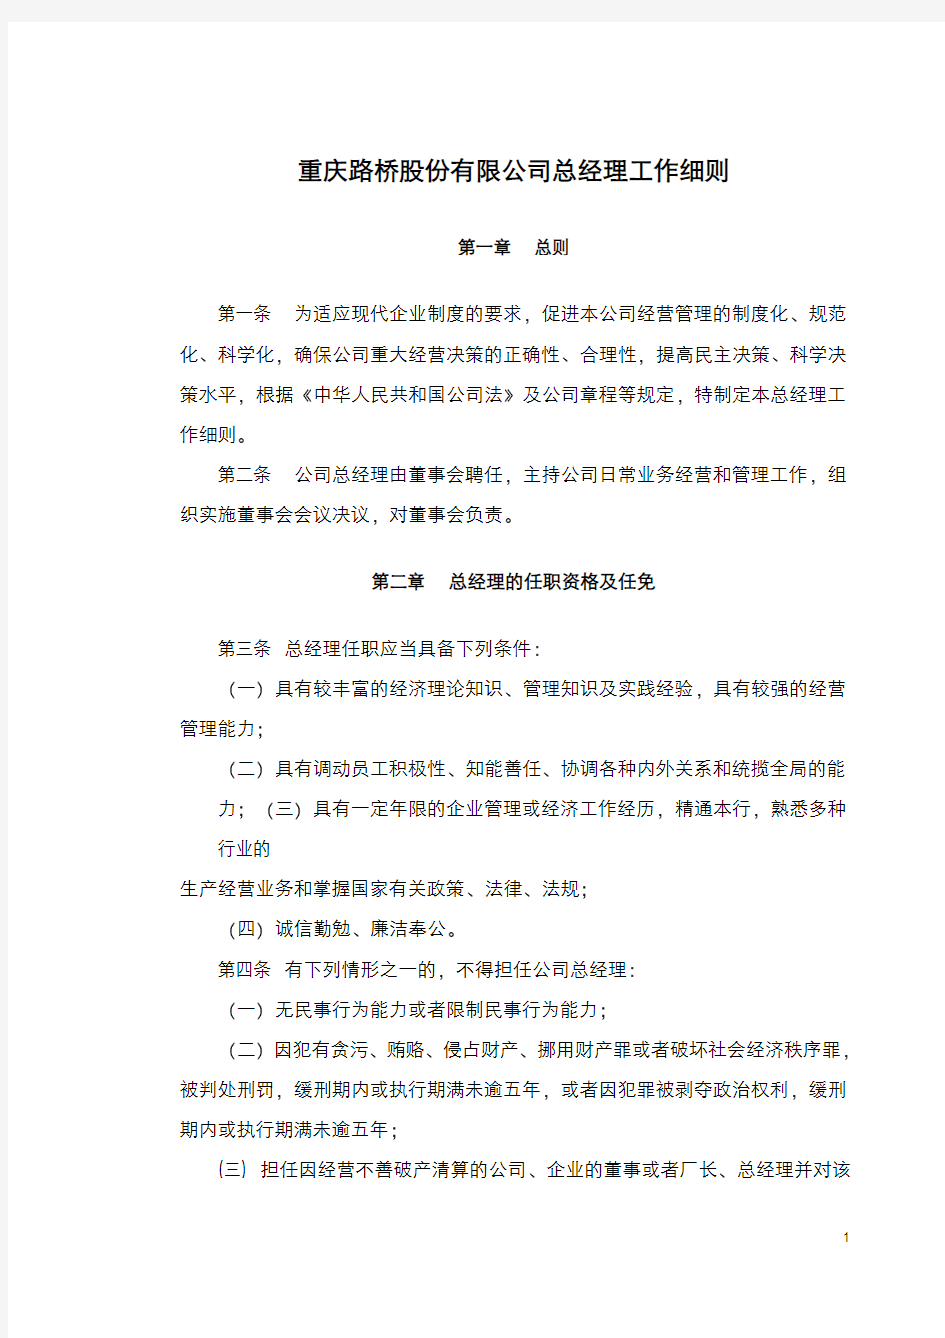 重庆路桥股份有限公司总经理工作细则(1)